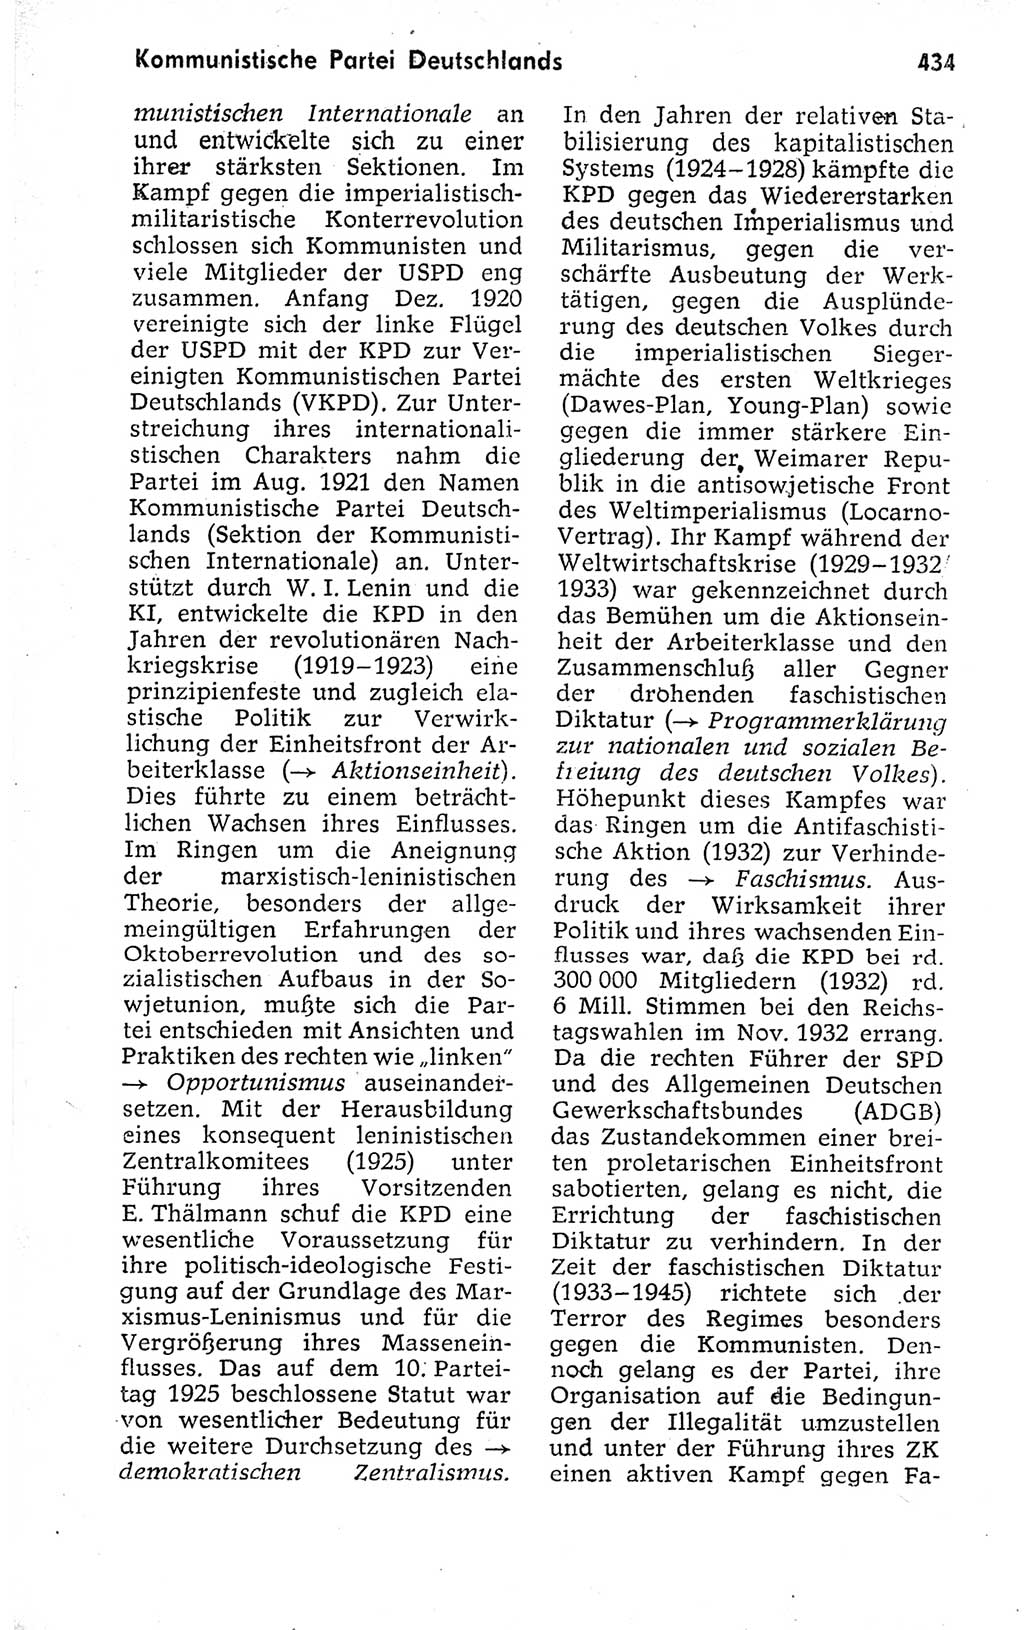 Kleines politisches Wörterbuch [Deutsche Demokratische Republik (DDR)] 1973, Seite 434 (Kl. pol. Wb. DDR 1973, S. 434)